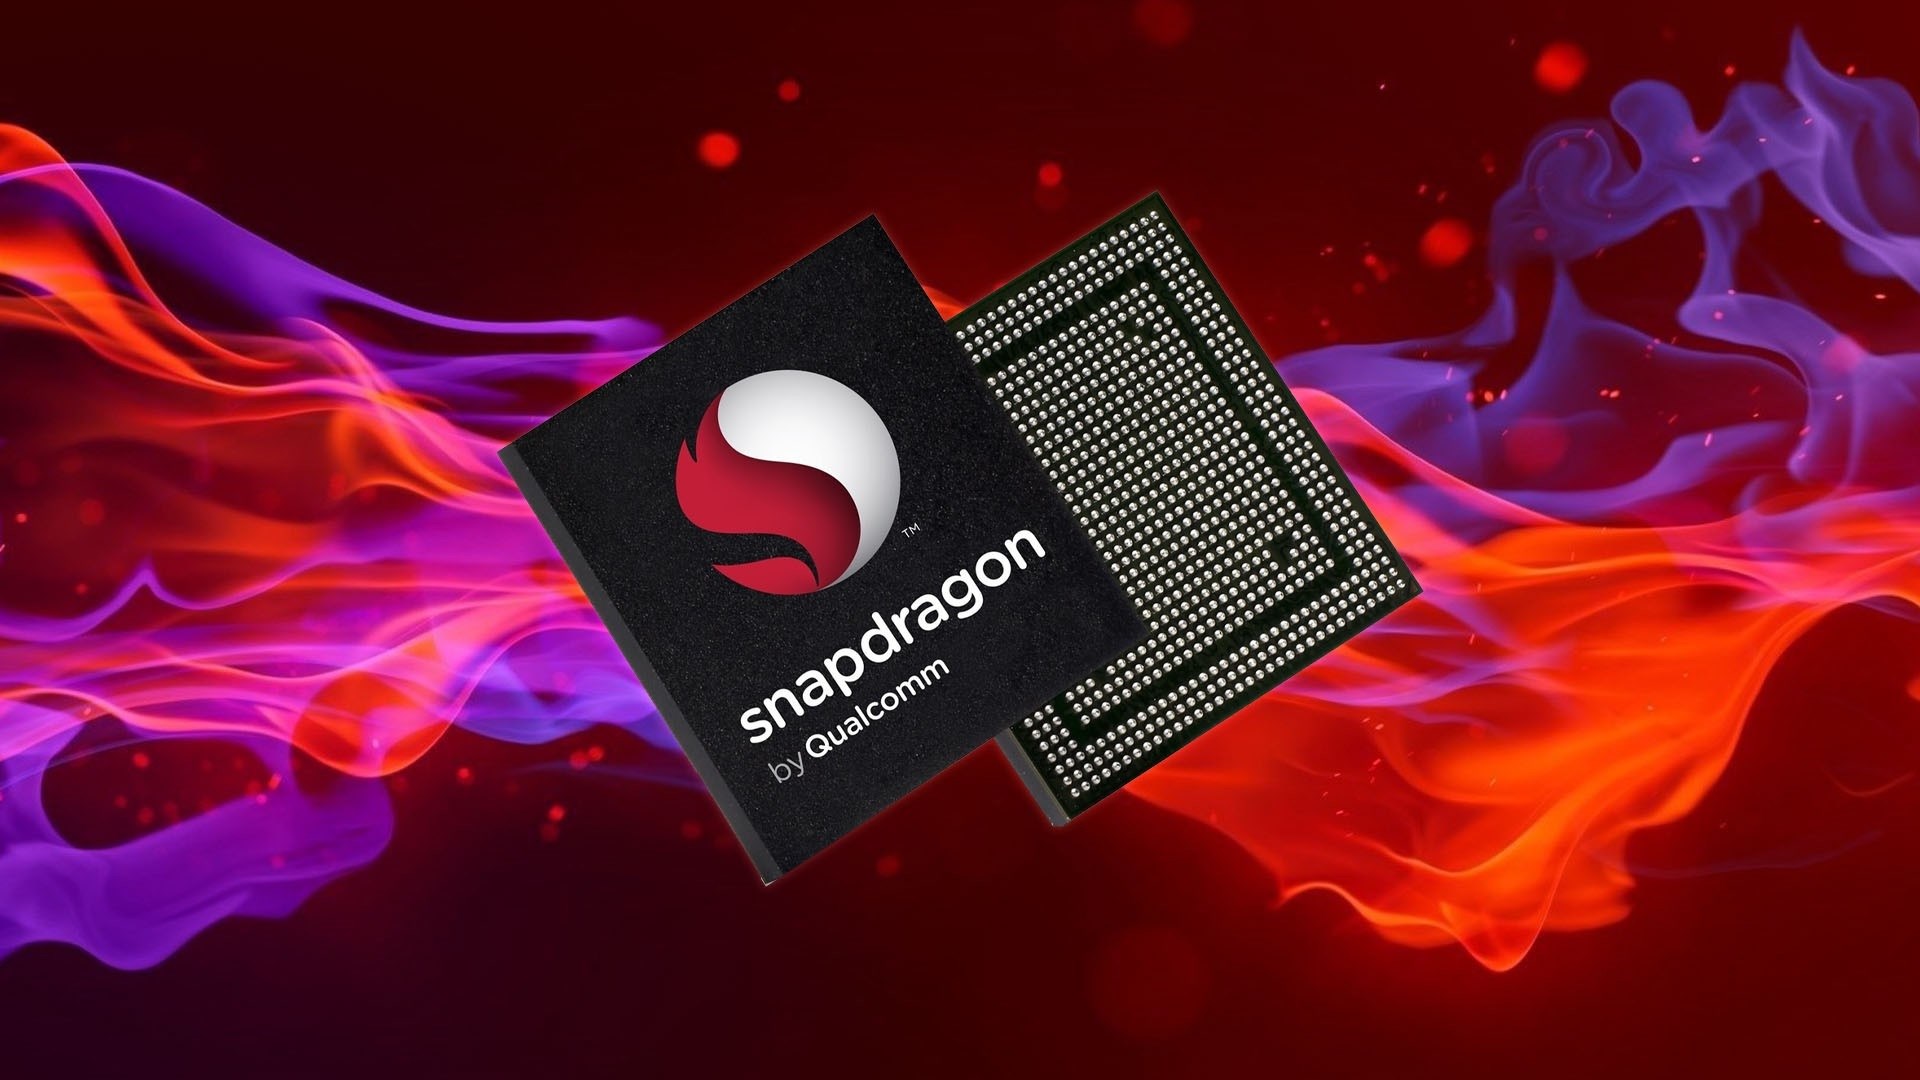 Samsung, Snapdragon 7+ Gen 1 üretimini rakibine kaptırdı!